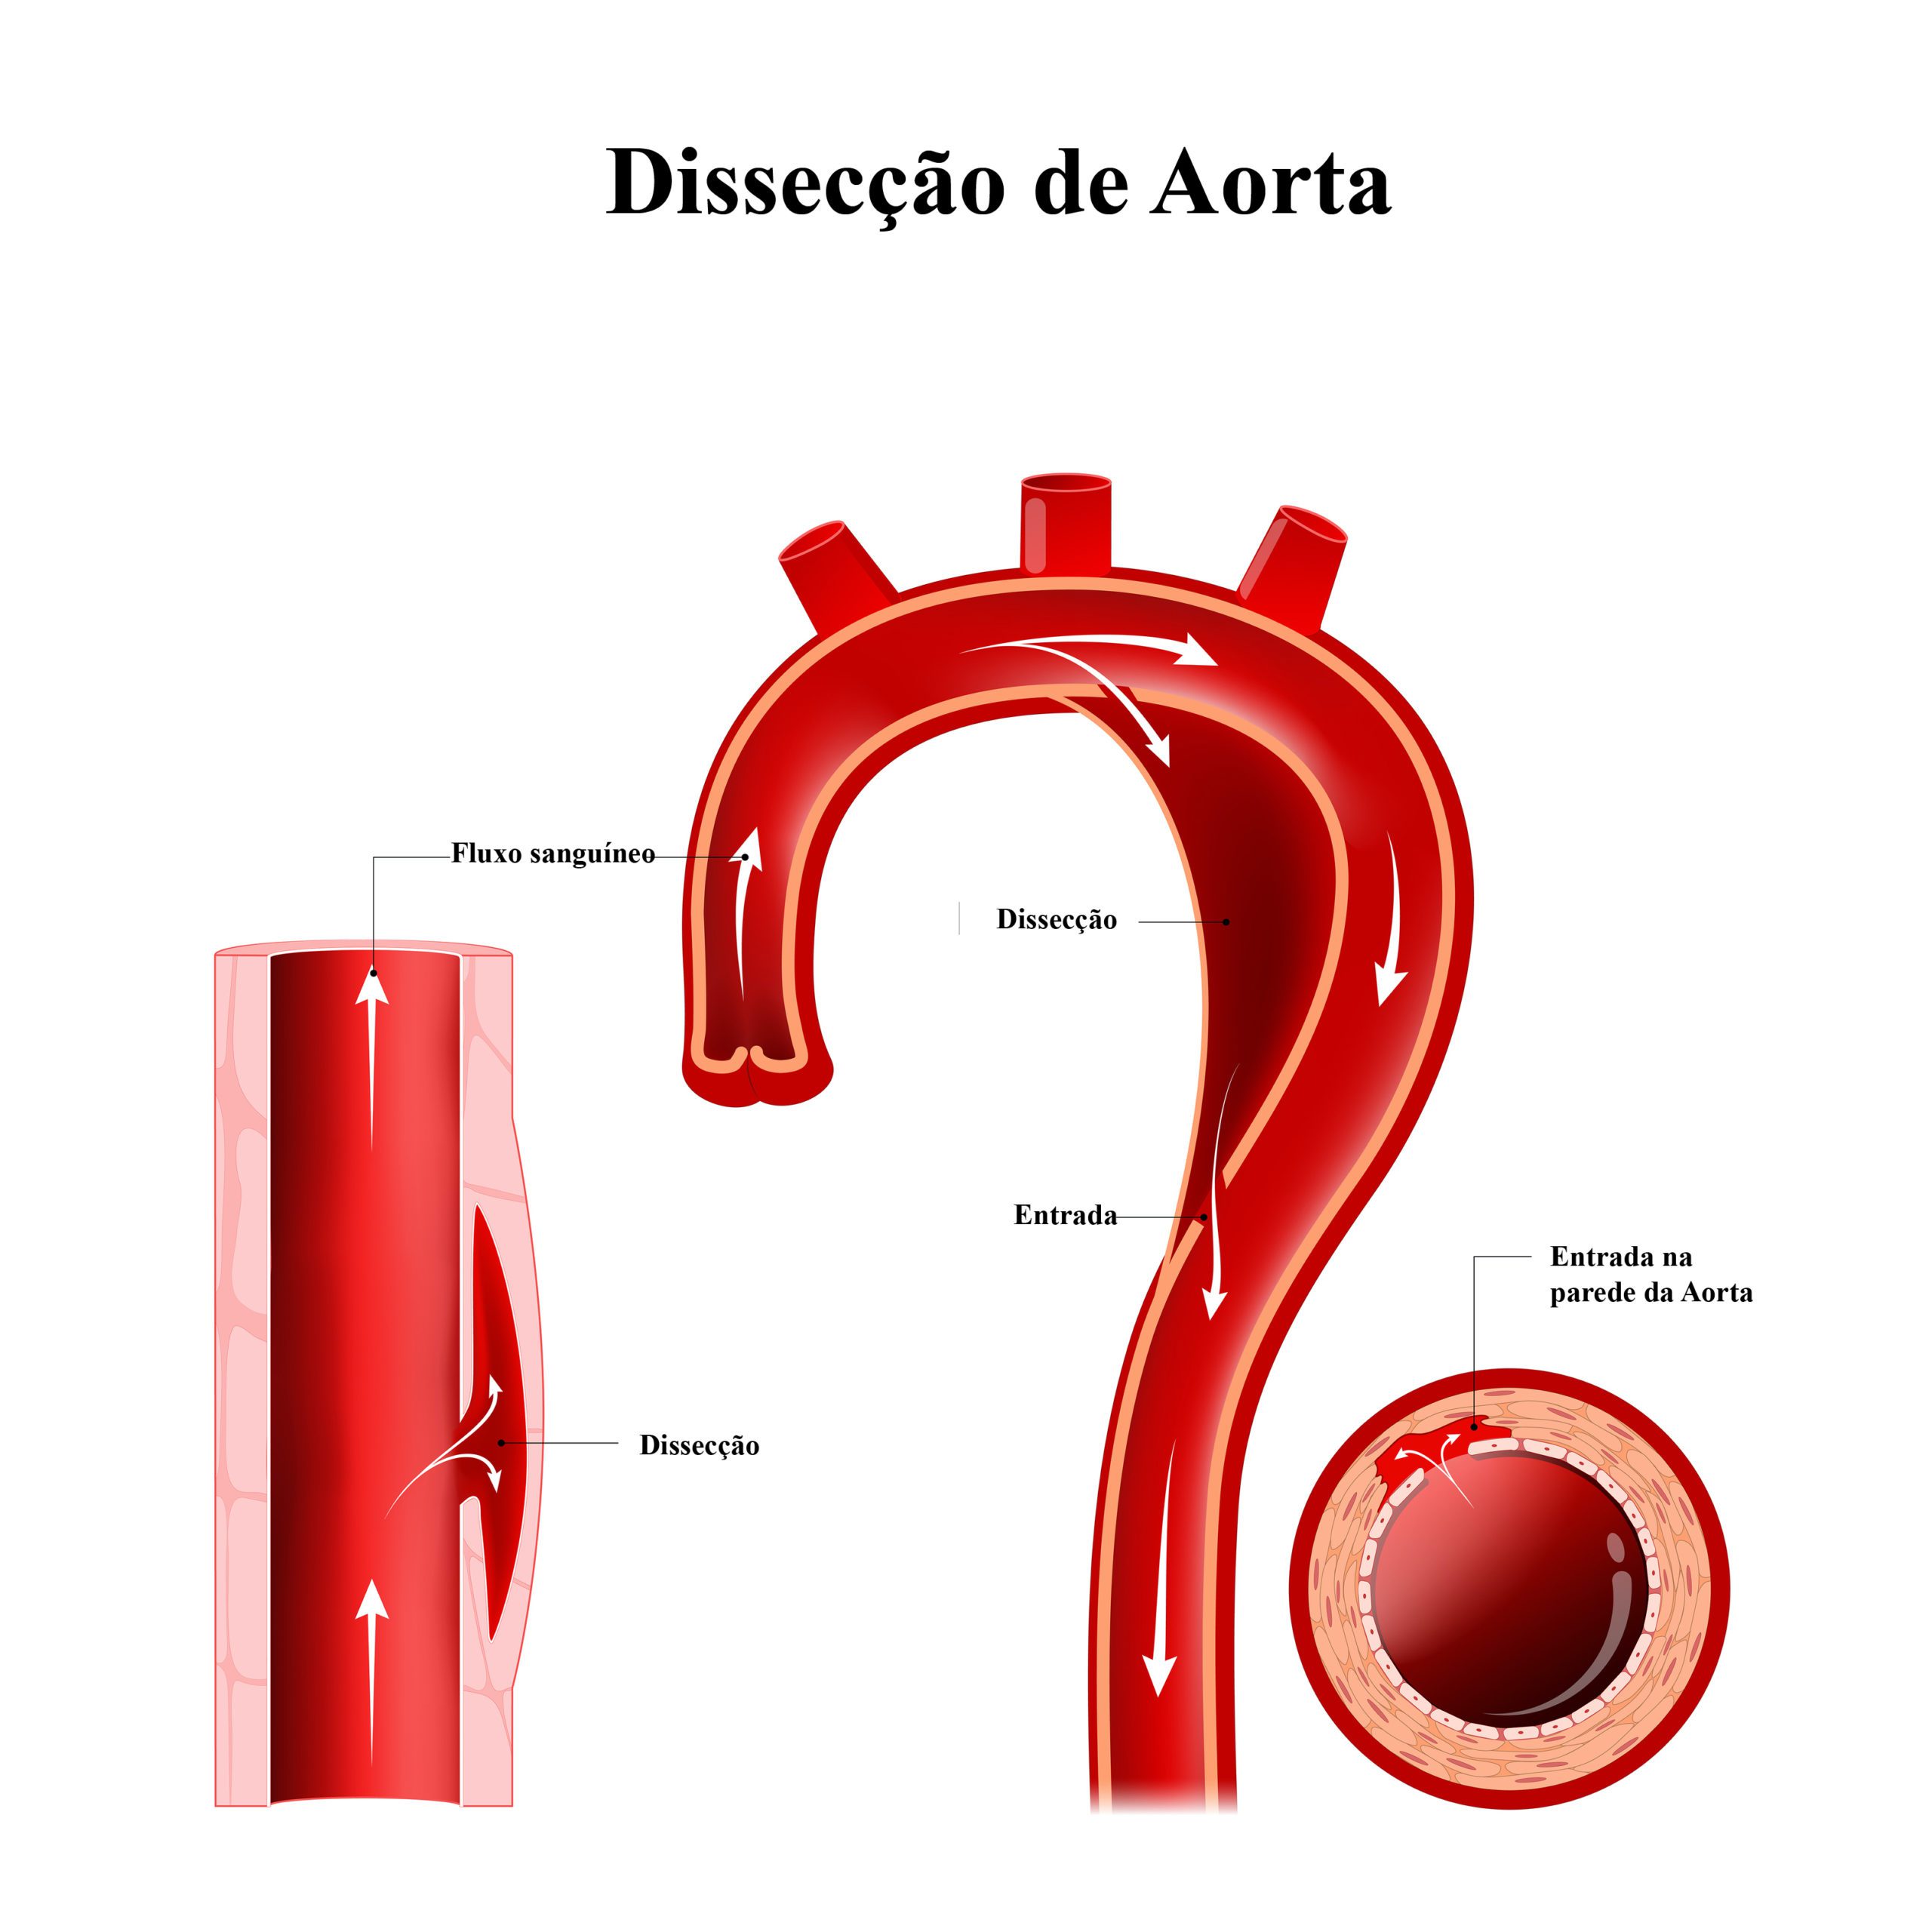 Jornal do Médico: Dissecção de Aorta representa risco de vida e exige um diagnóstico adequado